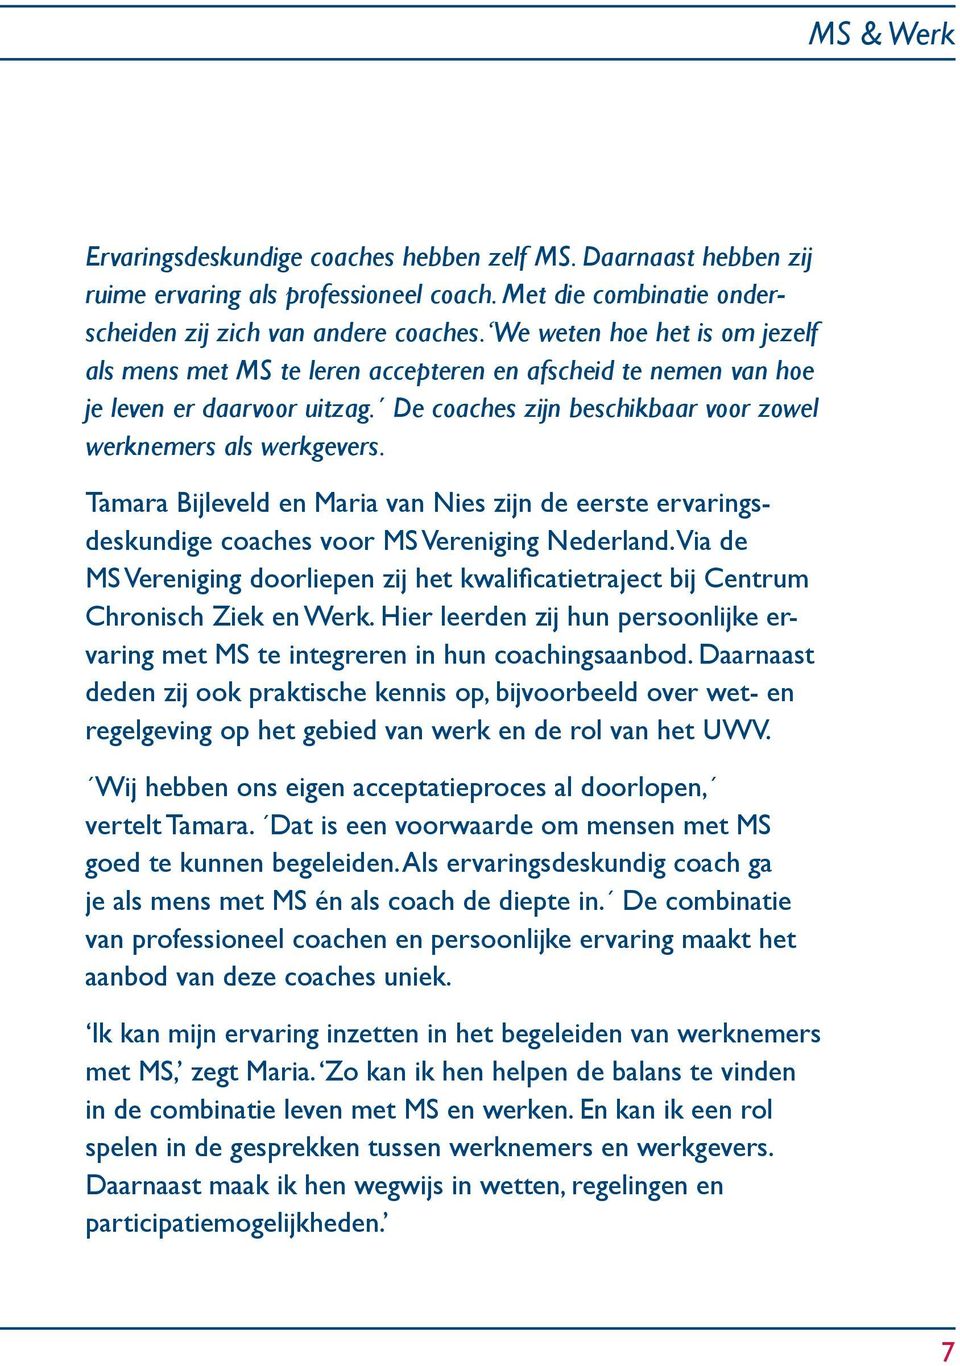 Tamara Bijleveld en Maria van Nies zijn de eerste ervaringsdeskundige coaches voor MS Vereniging Nederland.